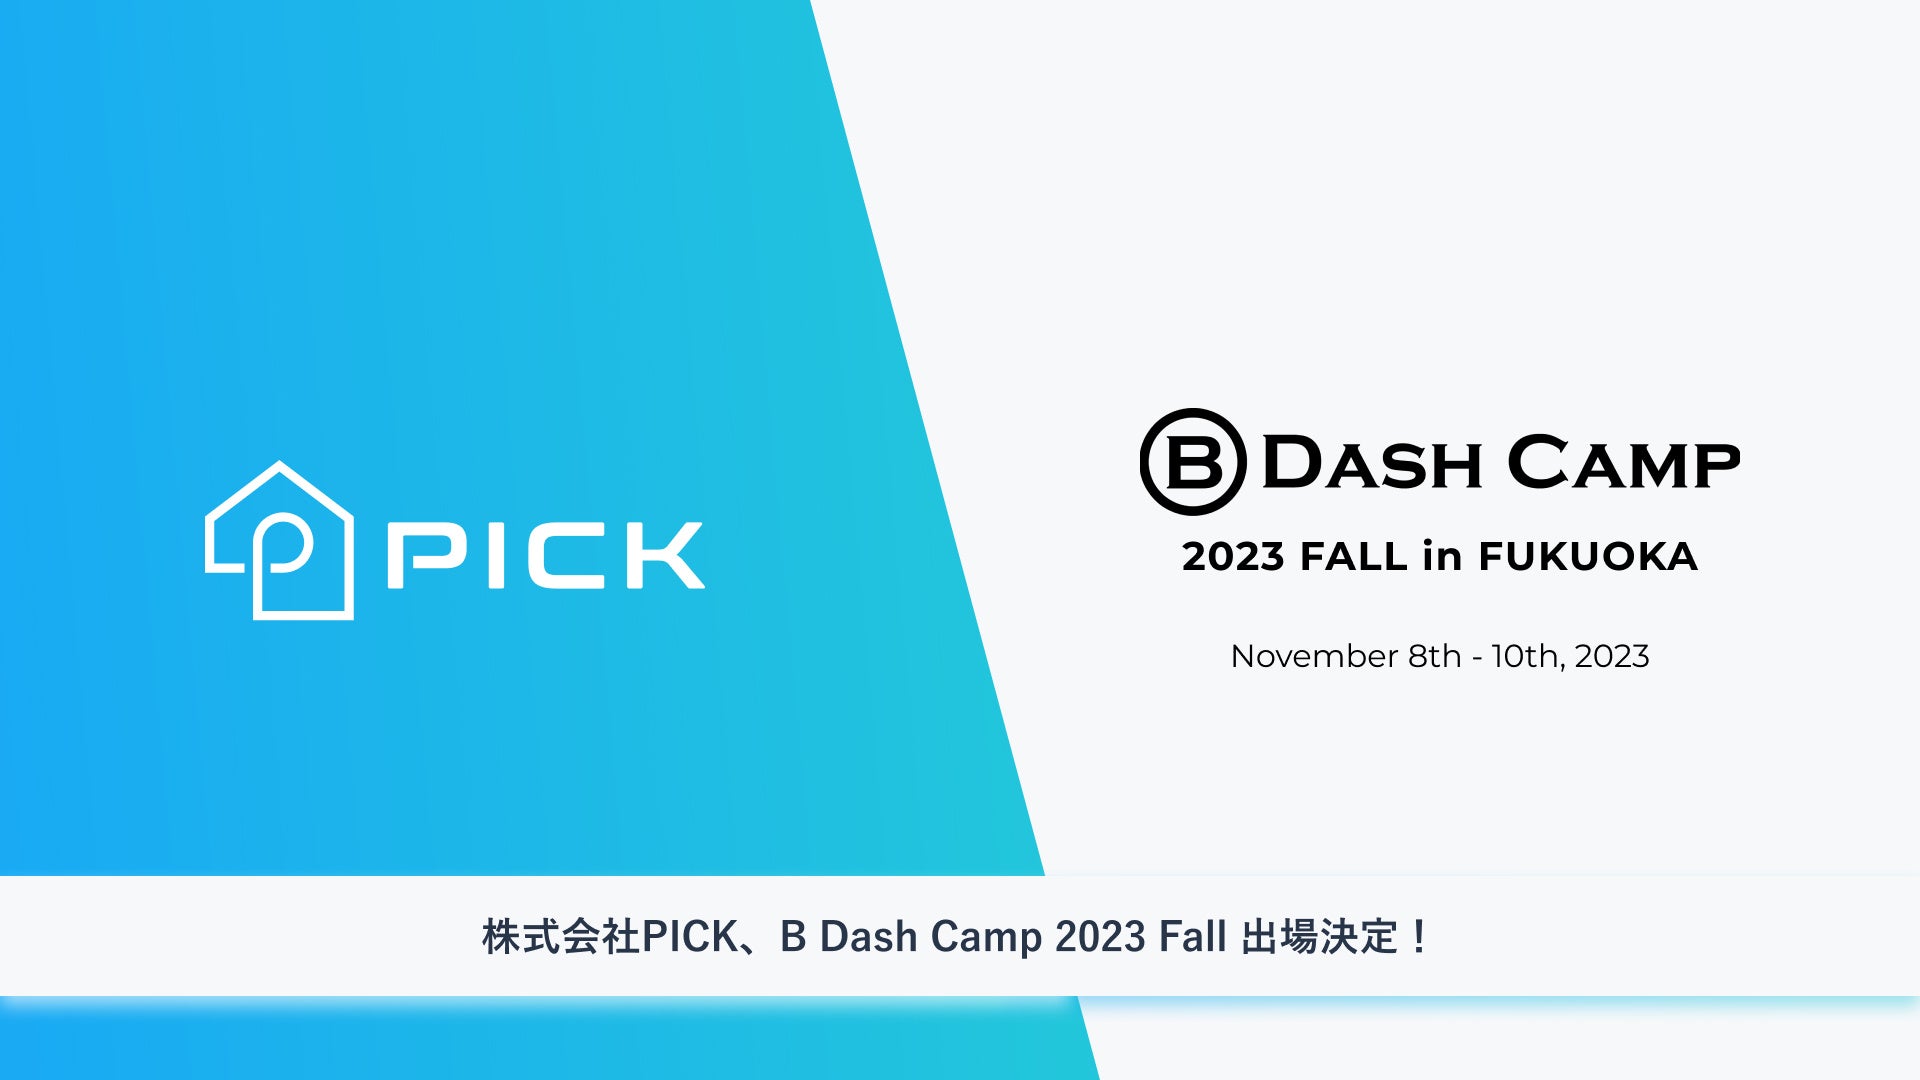 株式会社PICK「B Dash Camp 2023 FALL in FUKUOKA」に出場決定のサブ画像1